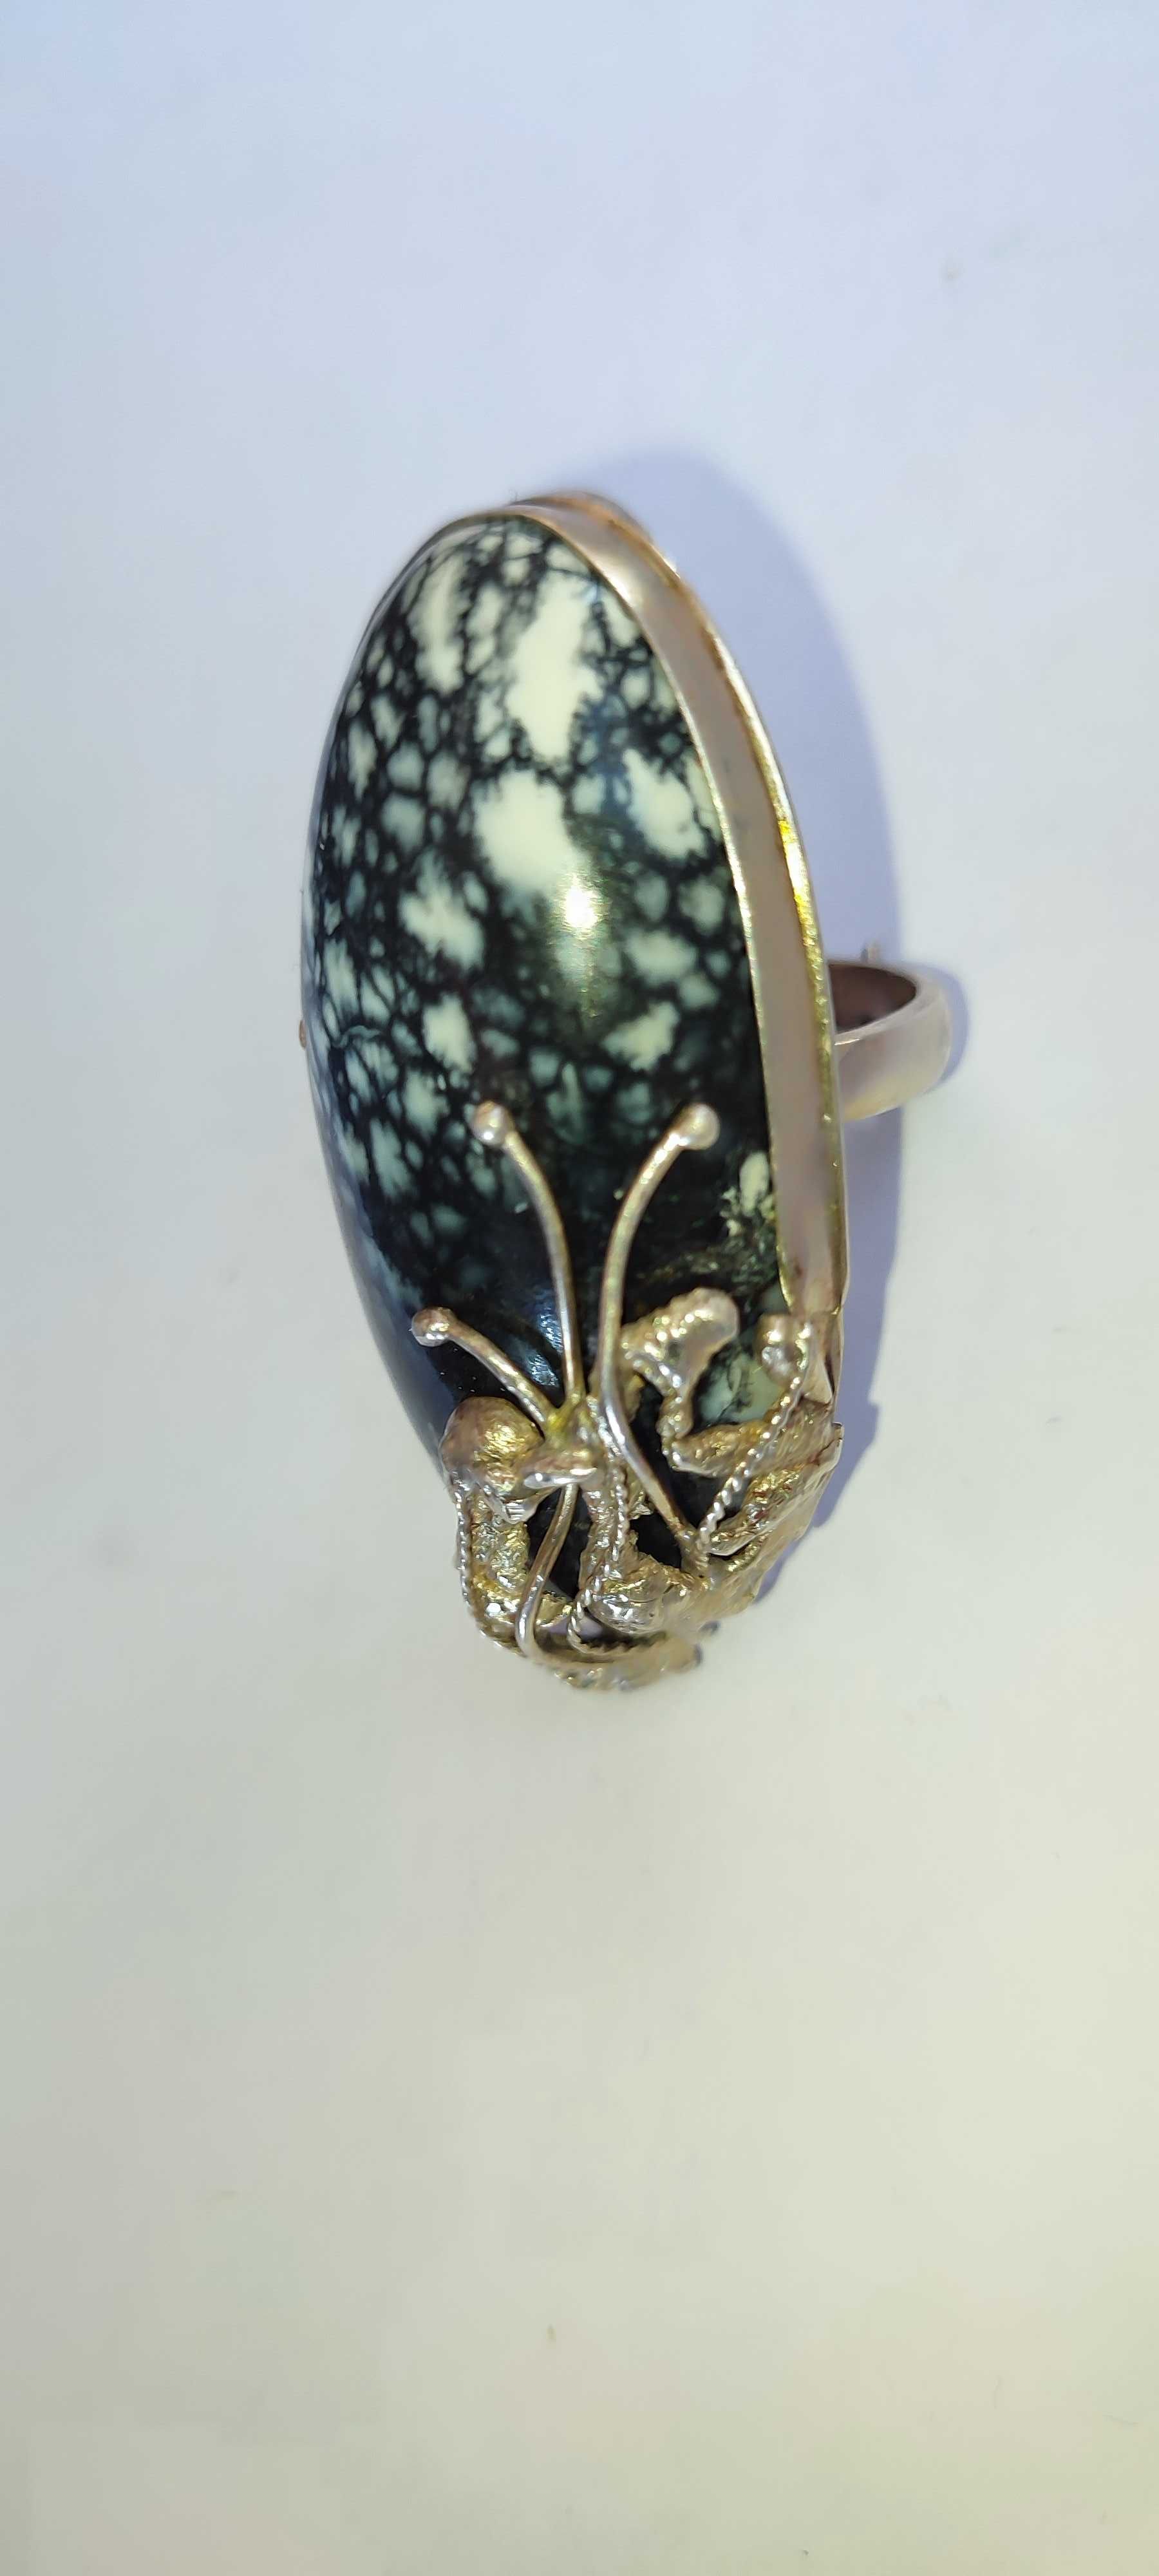 Красивейшее серебряное кольцо с крупным камнем ОПАЛ ЛЕОПАРДОВЫЙ